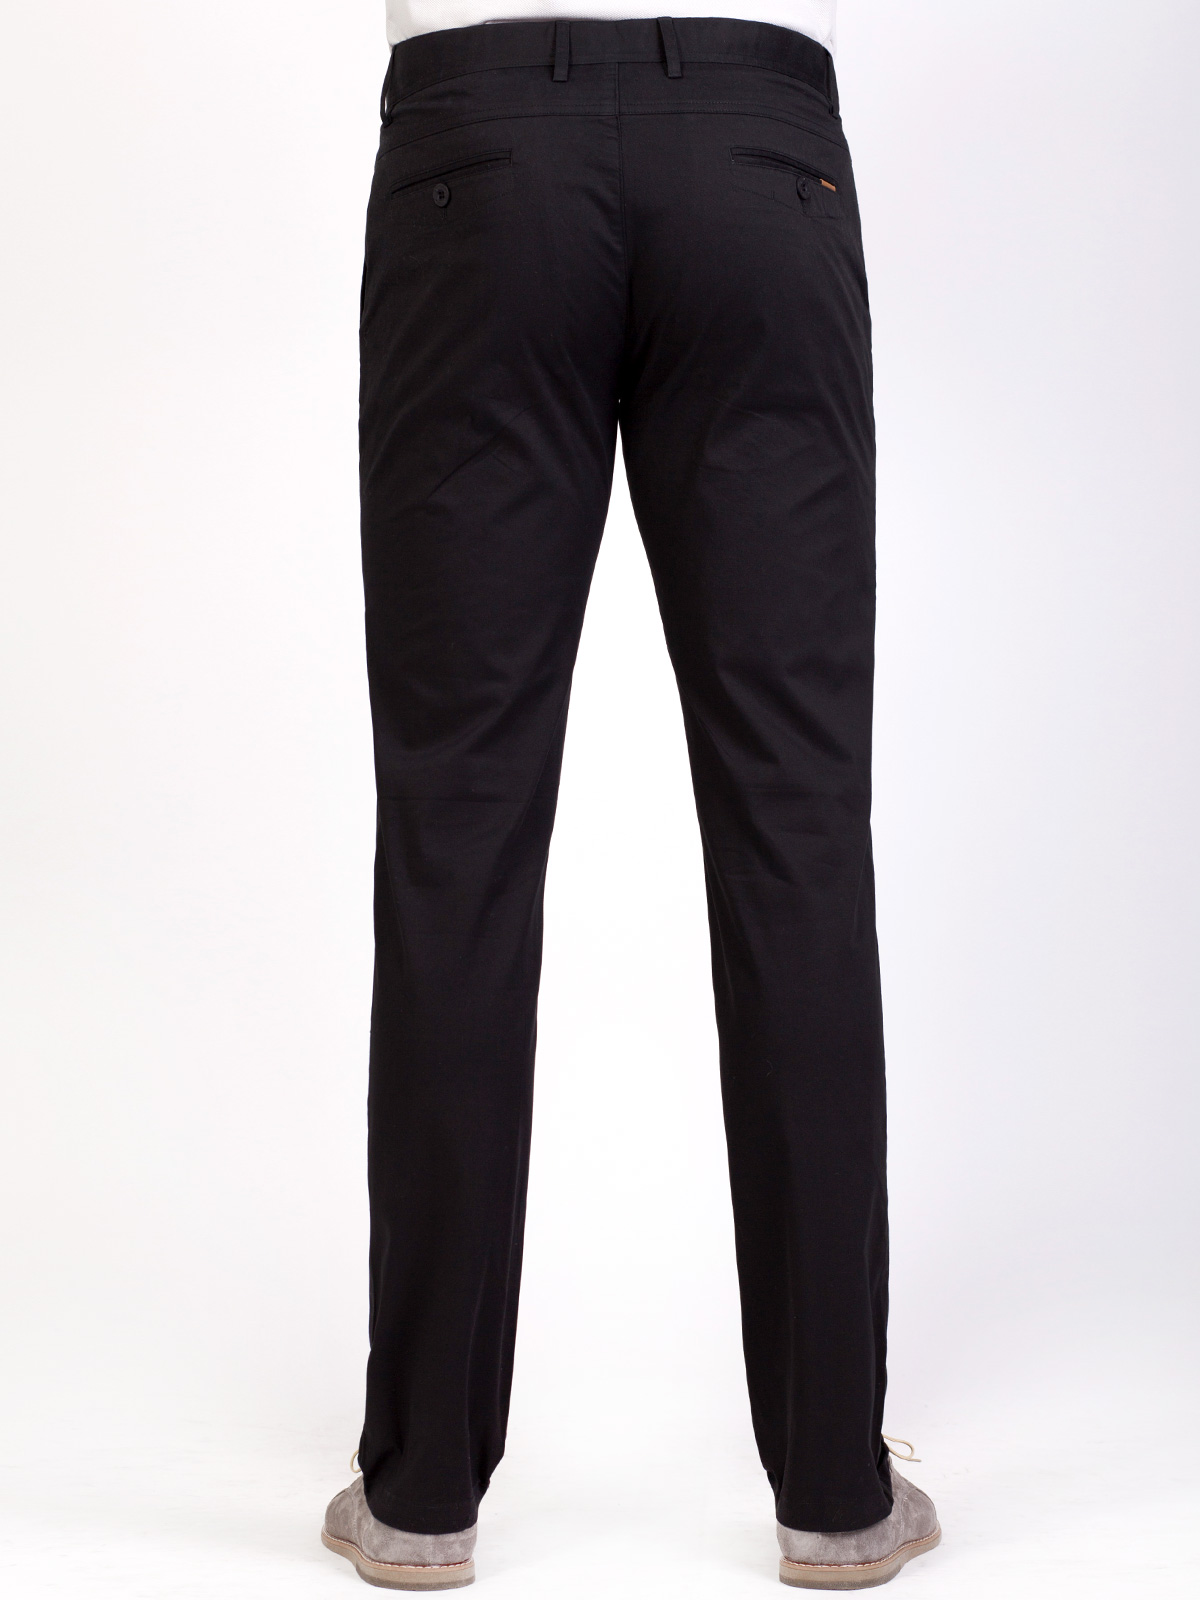 Панталон в черно от памук с еластан - 63229 20.00 лв img3